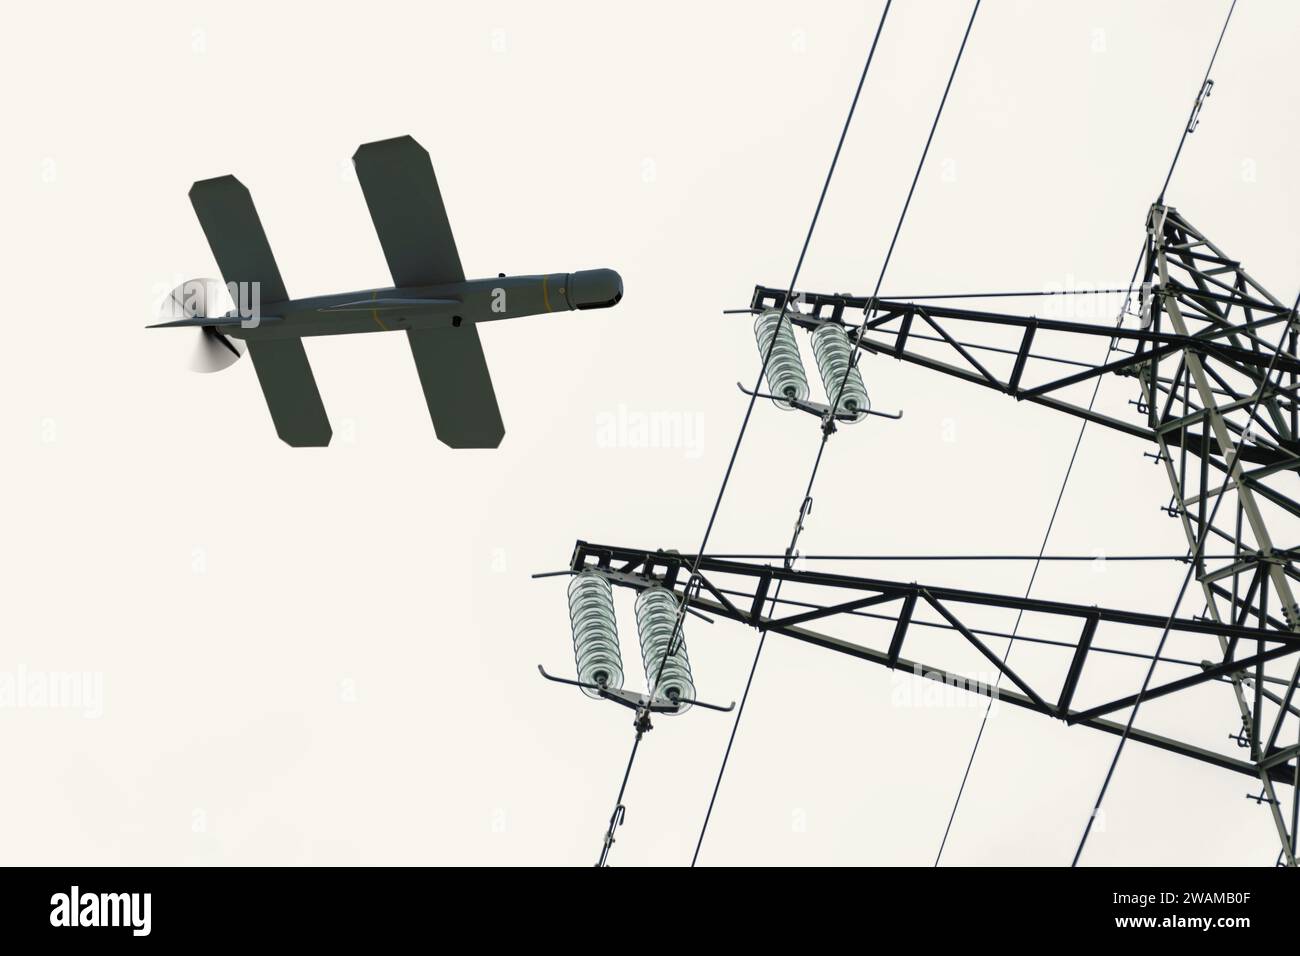 Il drone kamikaze "Lancet" attacca una linea elettrica. Concetto: Quadcopter da ricognizione per attacco militare, guerra Foto Stock